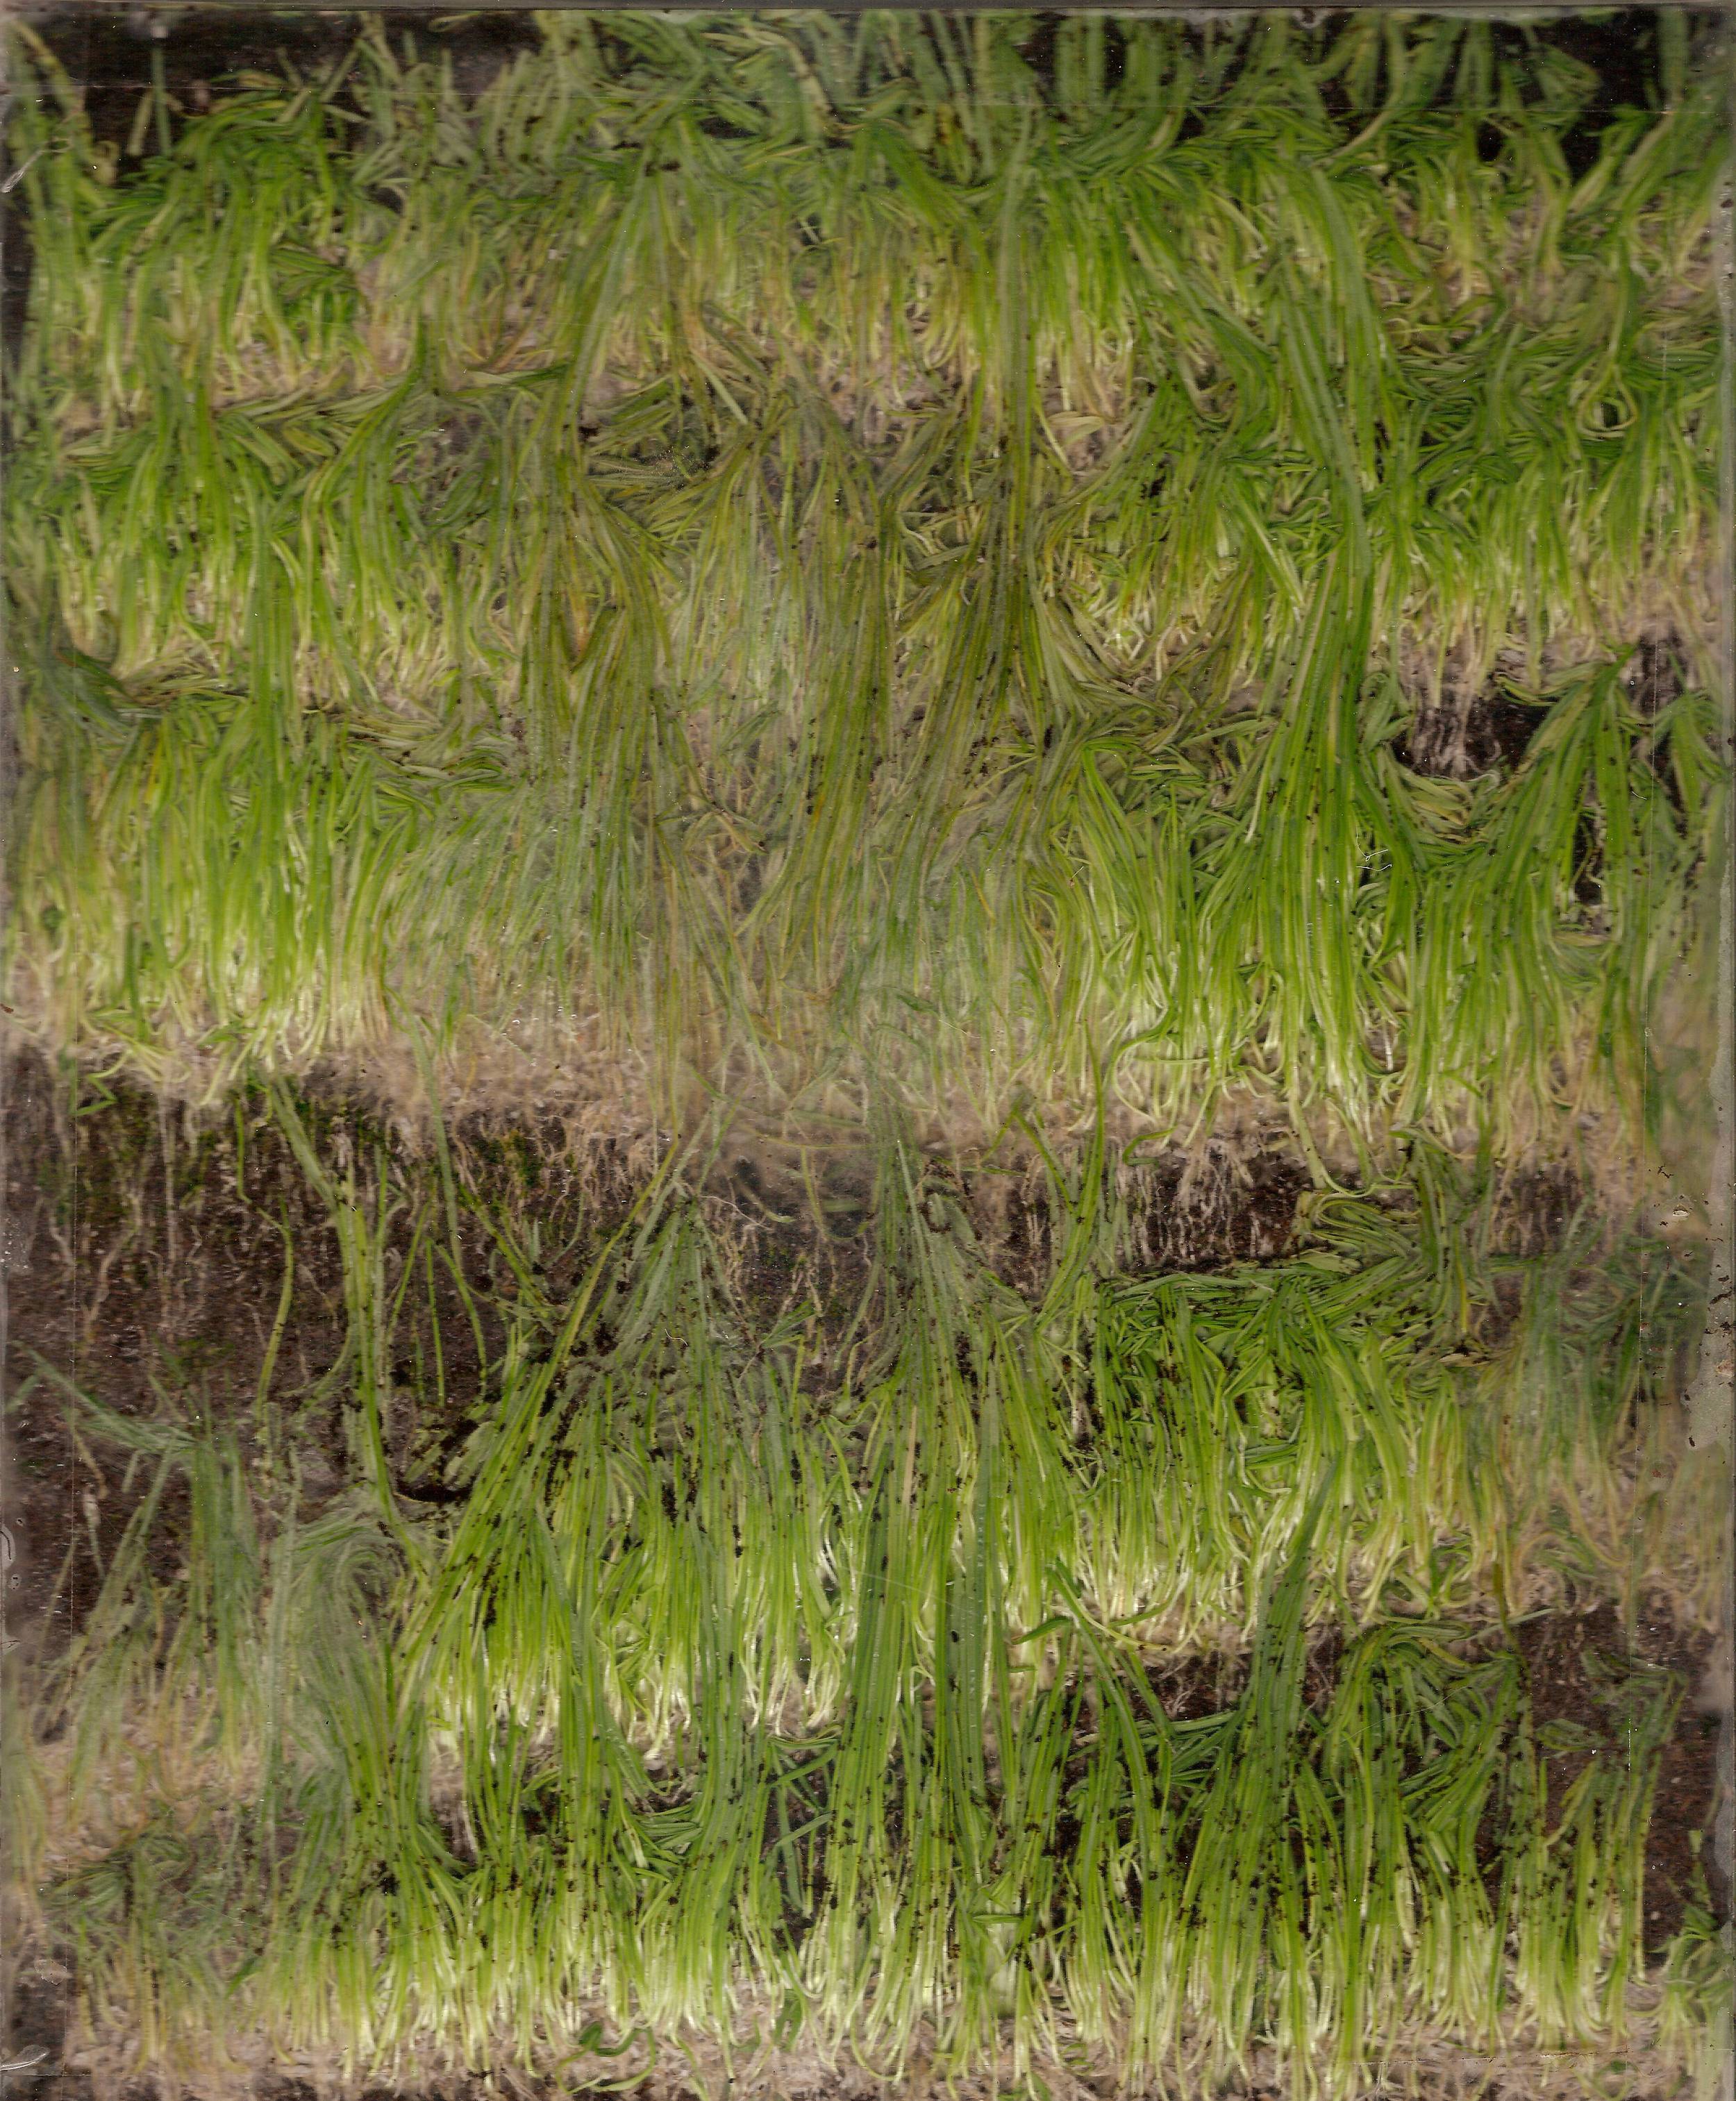  Plexiglass, Grass Seed, Soil  2013 